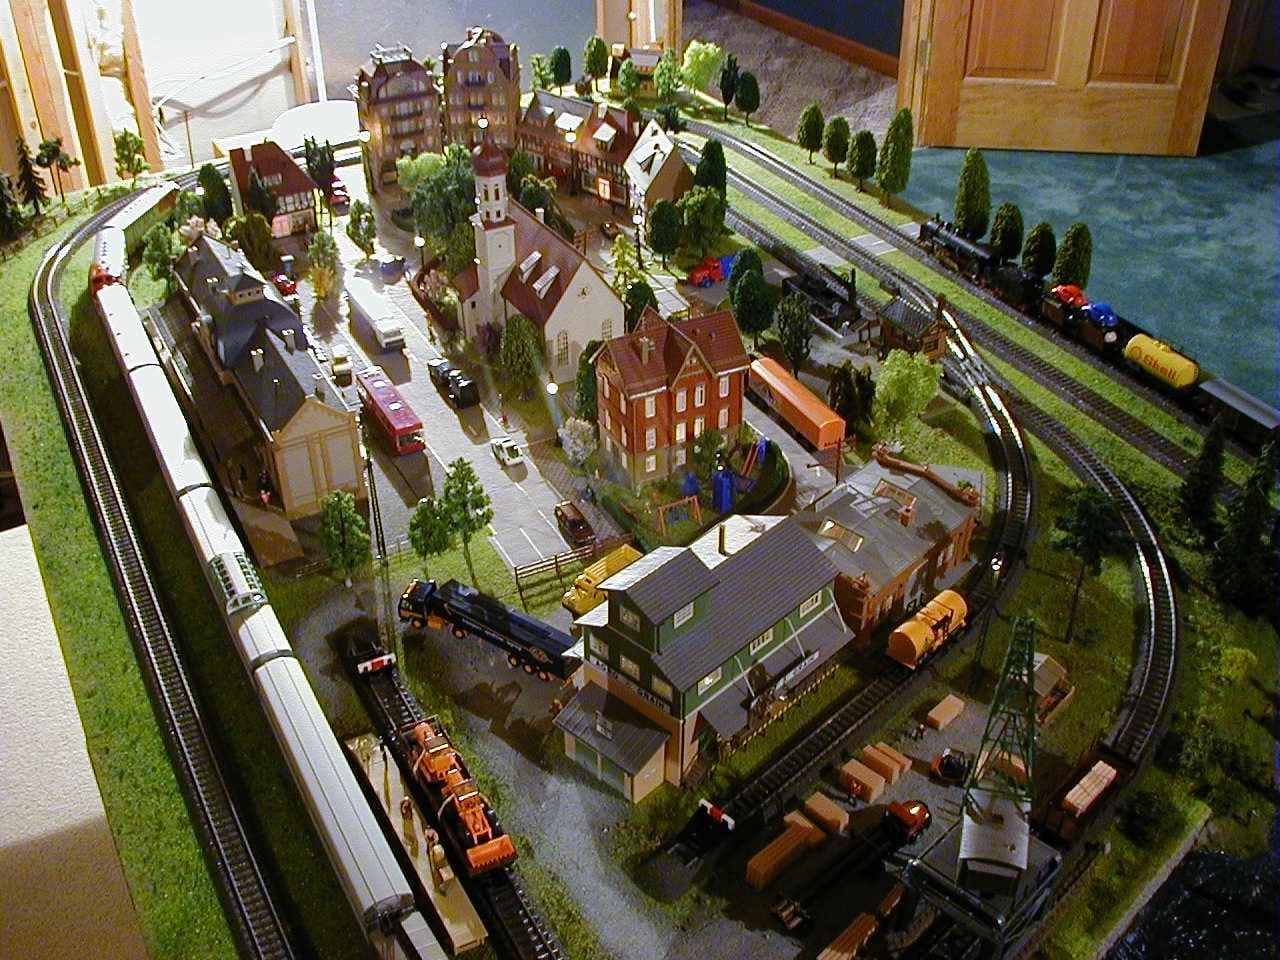 model train ho scale layouts